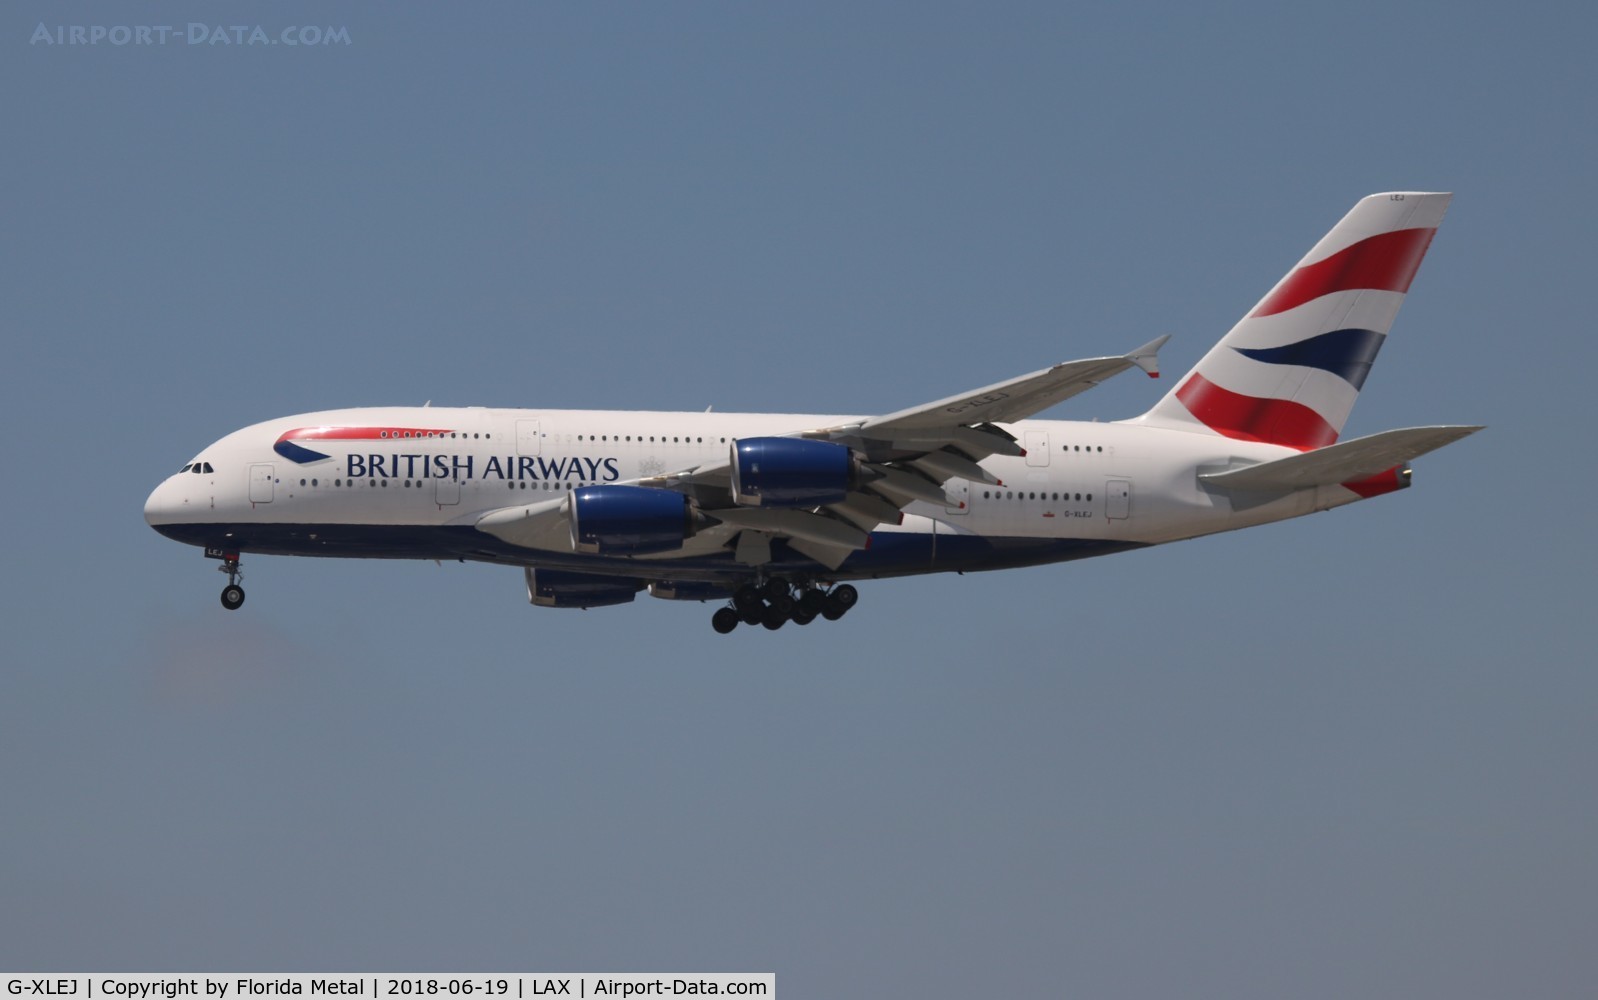 G-XLEJ, 2015 Airbus A380-841 C/N 192, British